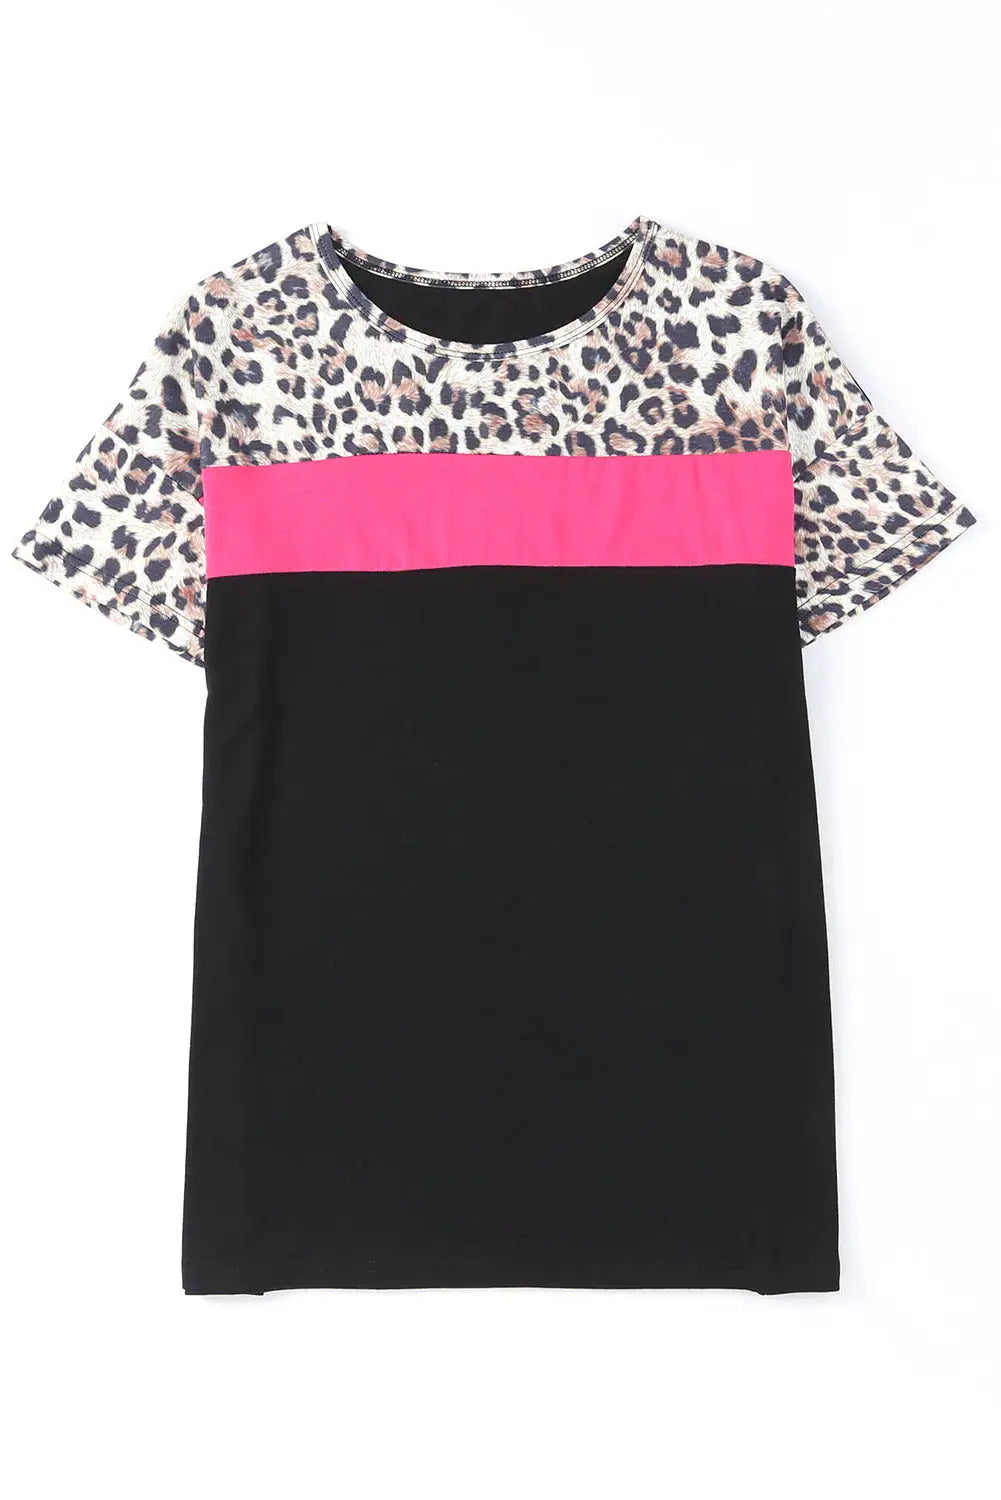 Black leopard colorblock splicing t-shirt - tops